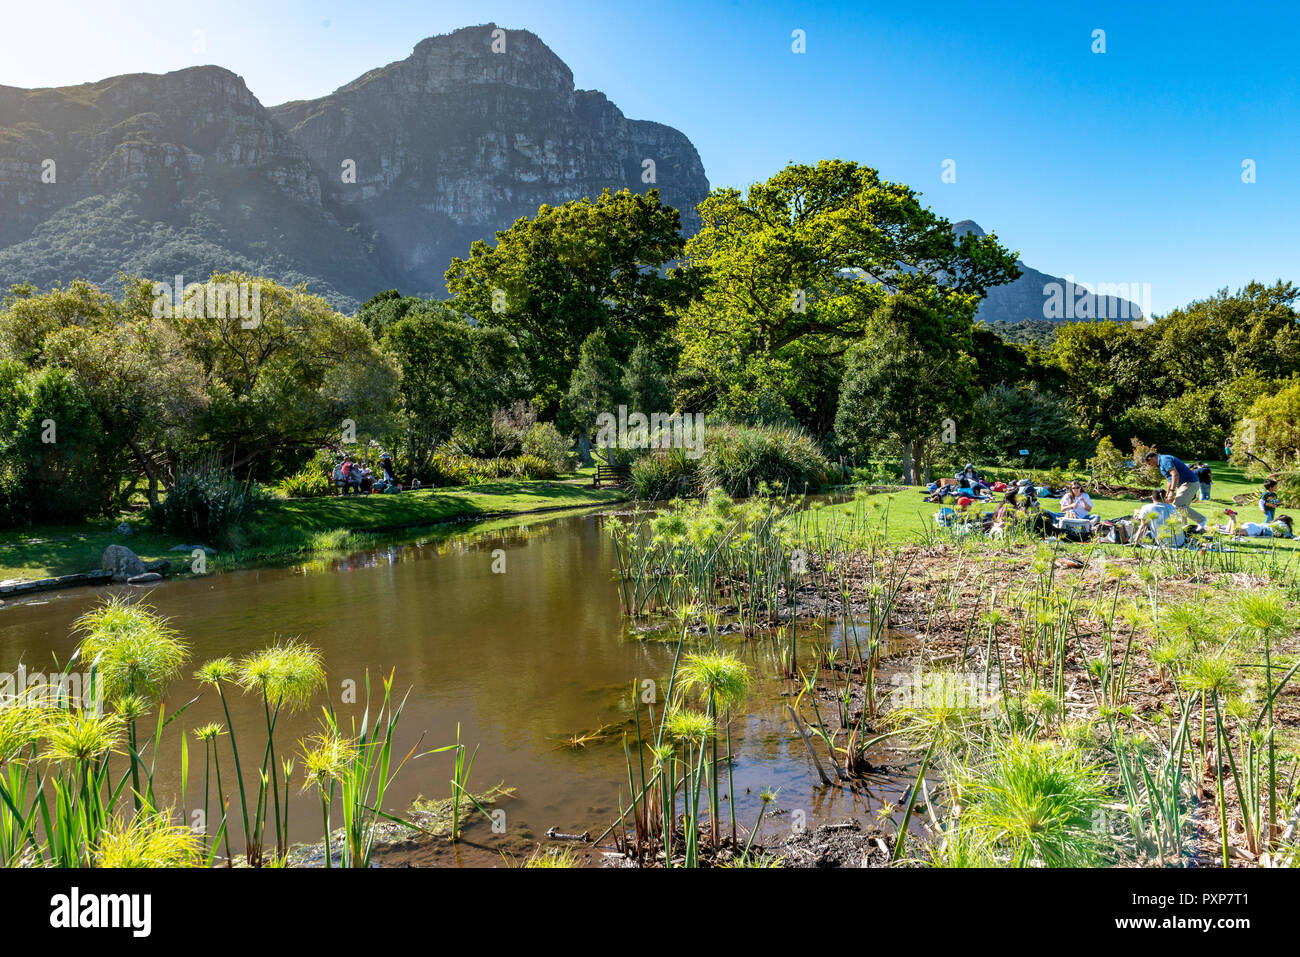 Kirstenbosch Botanical Gardens, Newlands, Cape Town, South Africa Stock Photo